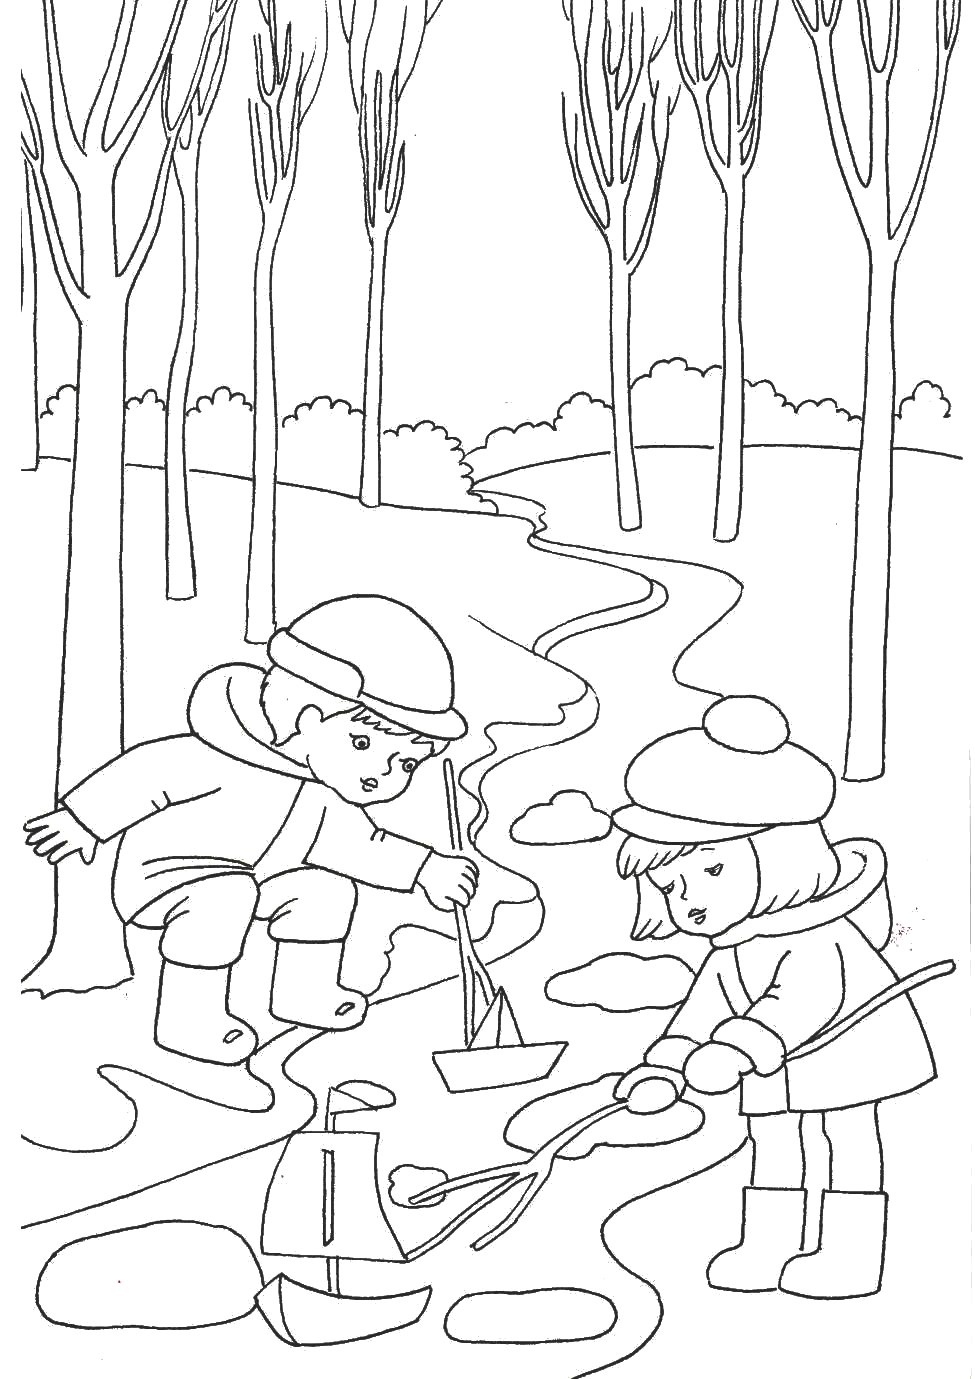 Раскраска: ручей в лесу и дети играют с бумажными корабликами (ручей, дети)